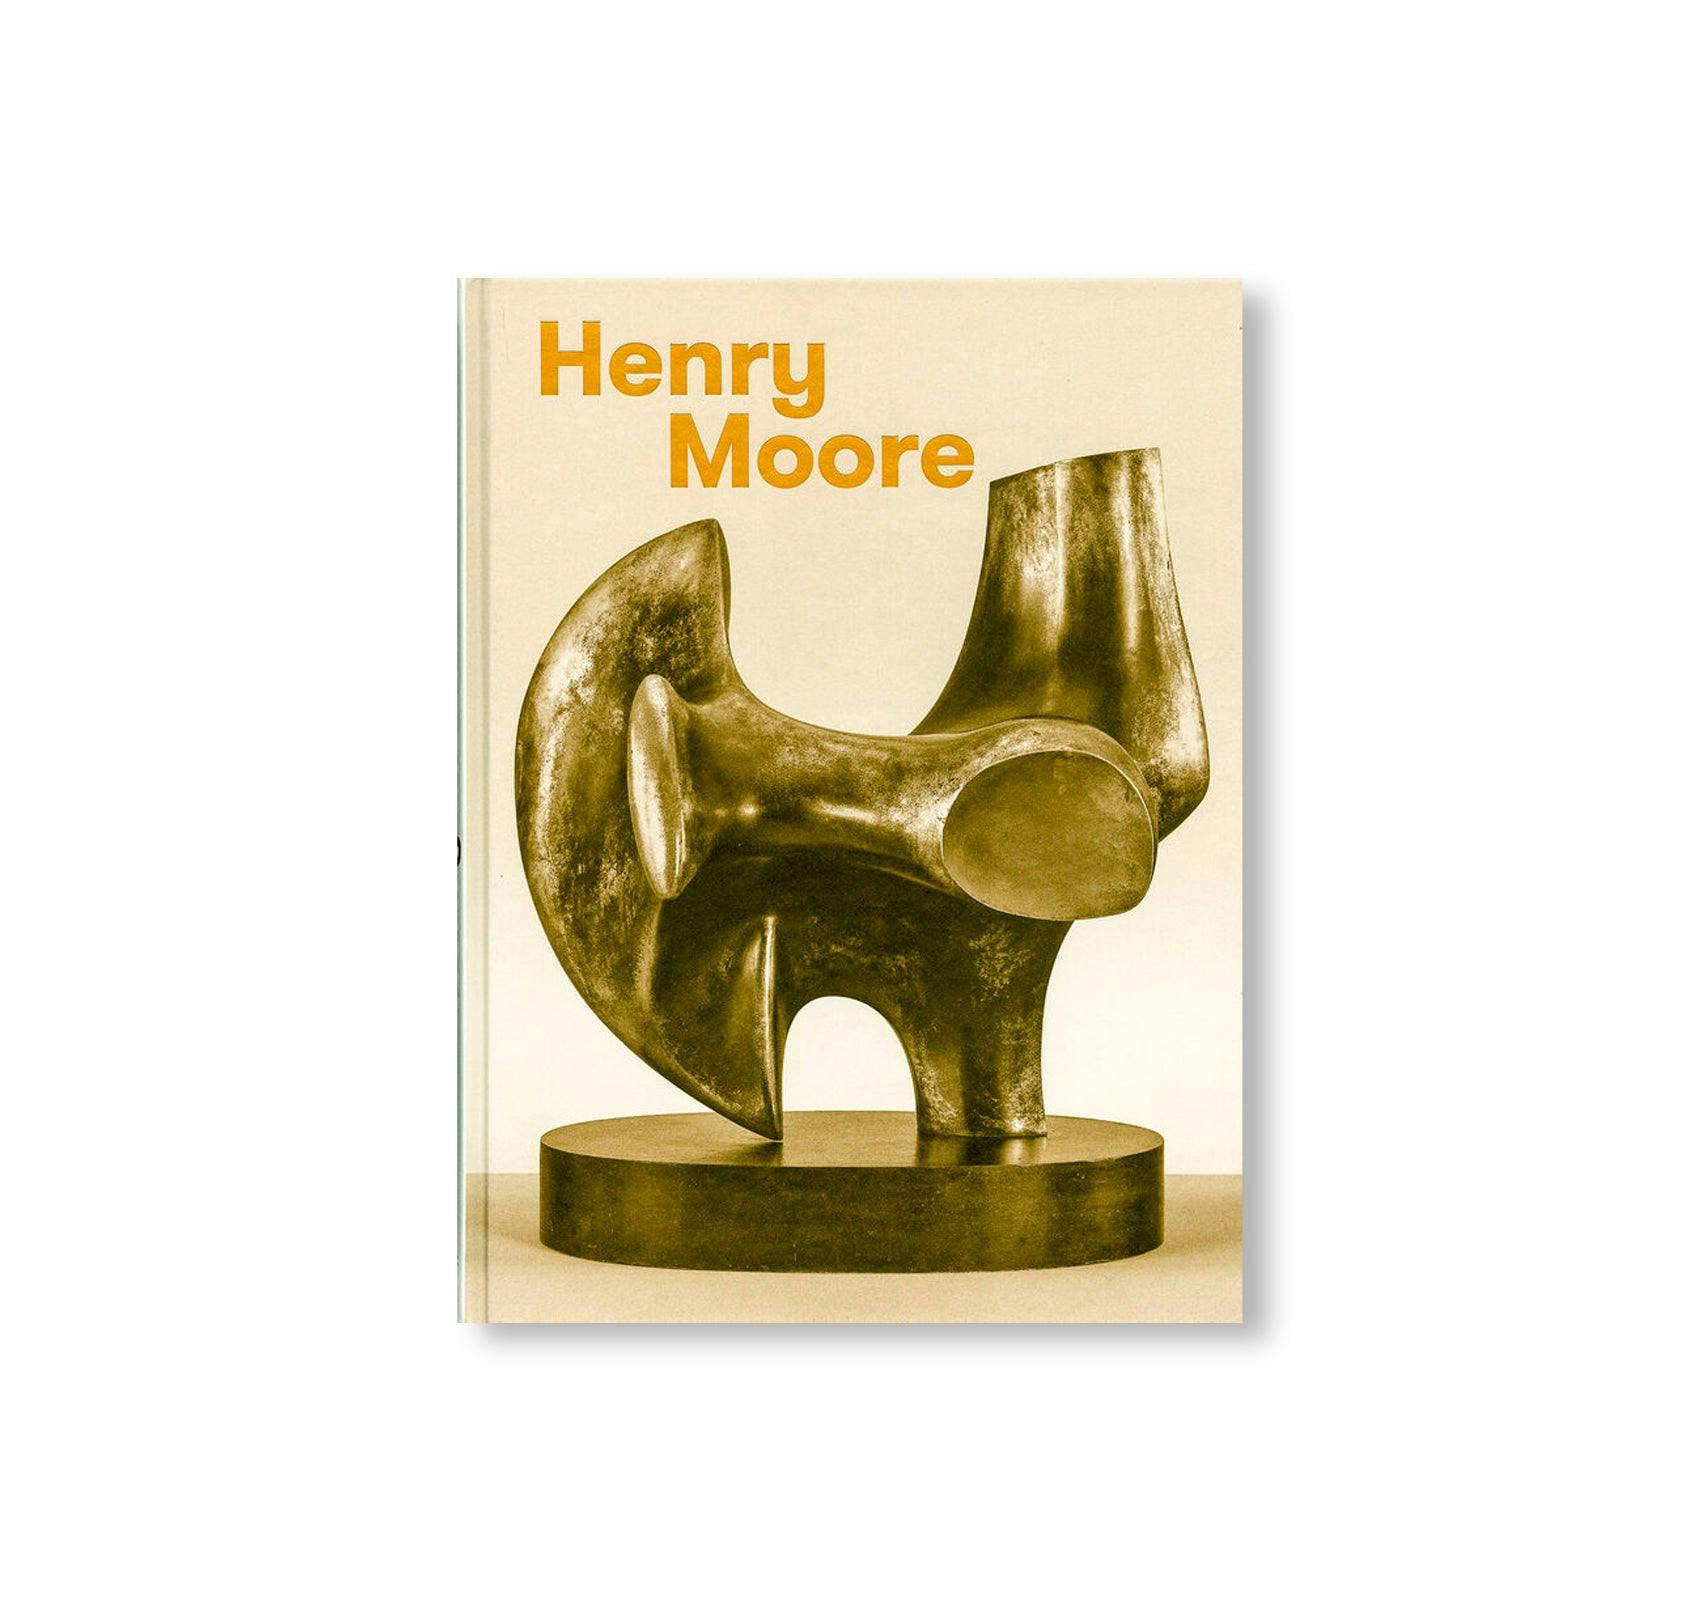 超特価新作Henry Moore、ヘンリームーア、INTERIOR SCENES、海外オークション超希少レゾネ、有名画家、非売品、新品額装付 送料無料、coco 自然、風景画